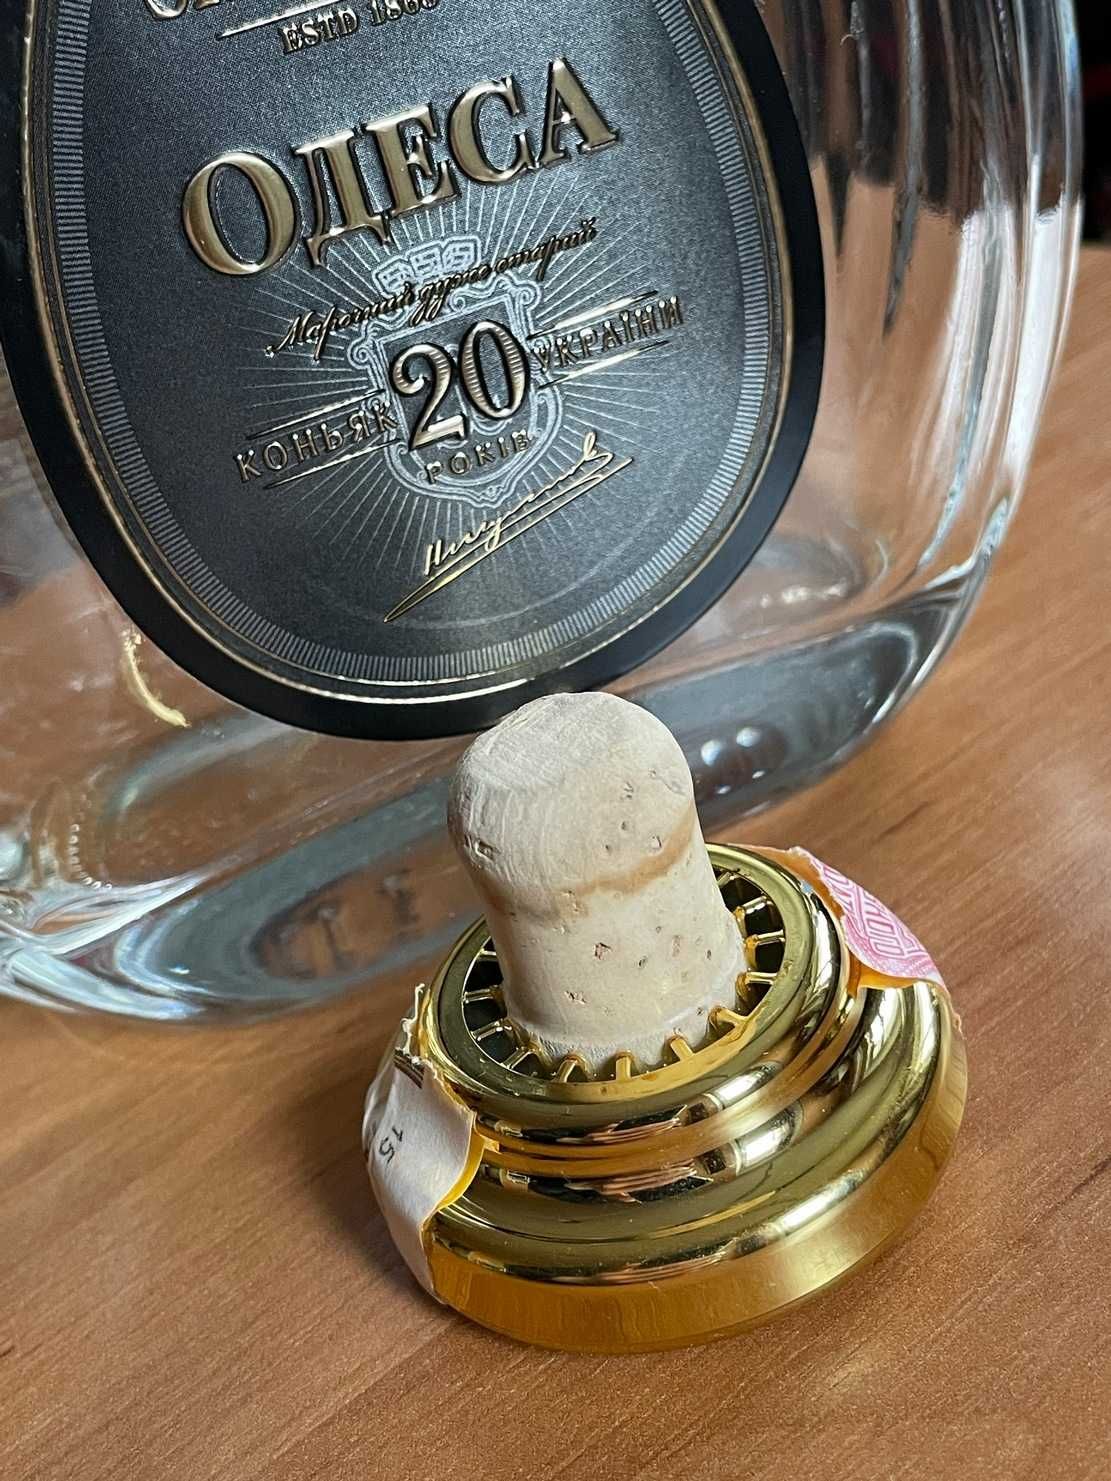 Бутылка из под коньяка Shystoff  Одеса 20 лет.